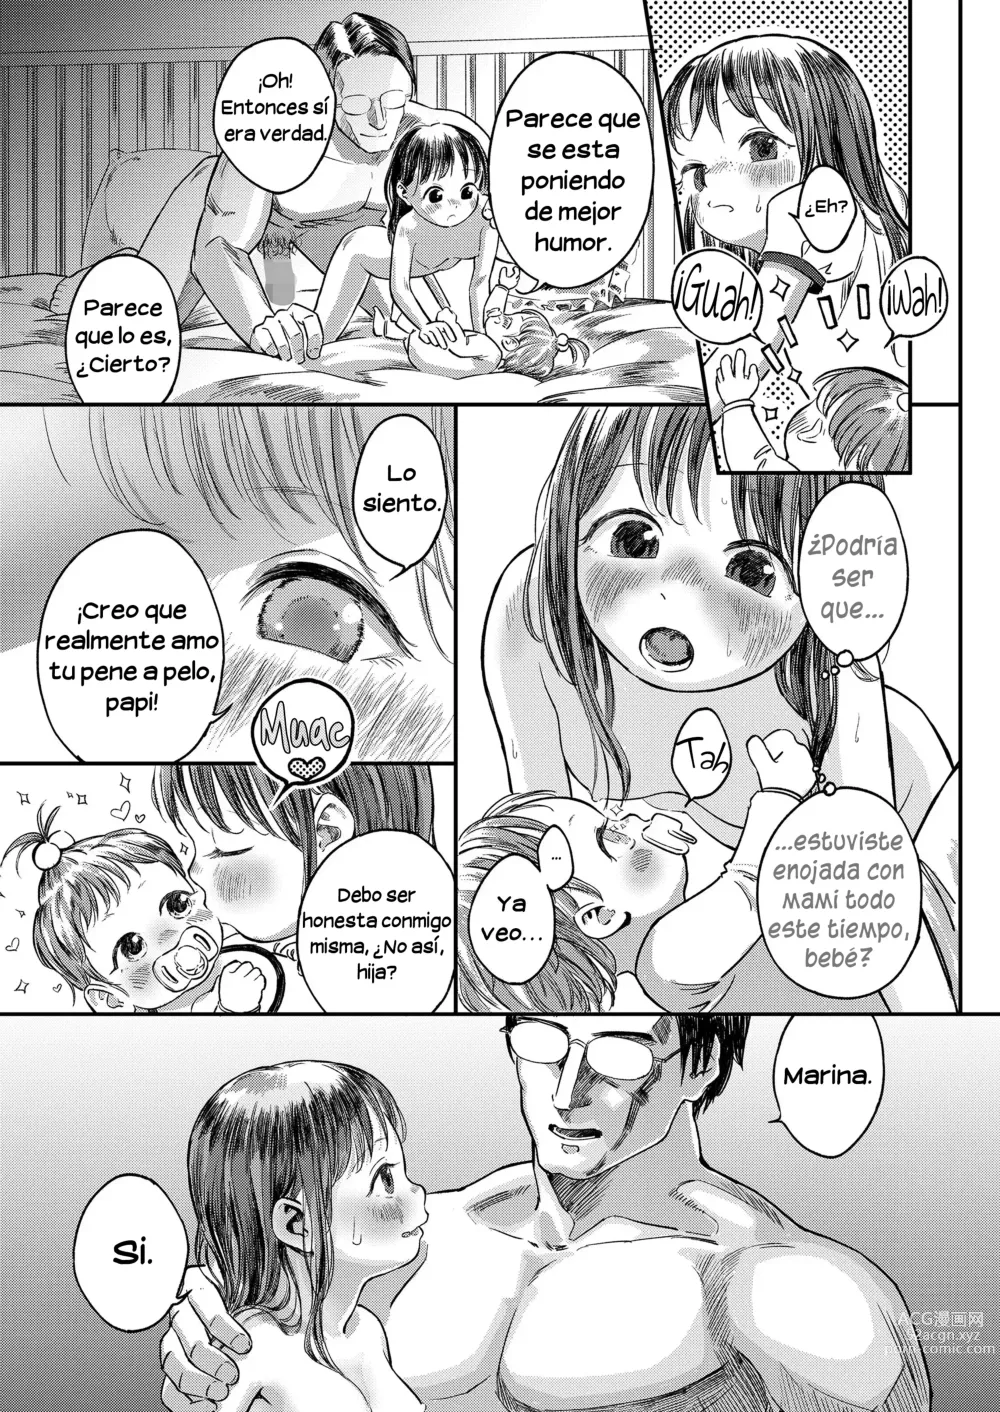 Page 17 of manga Marina no necesita protección